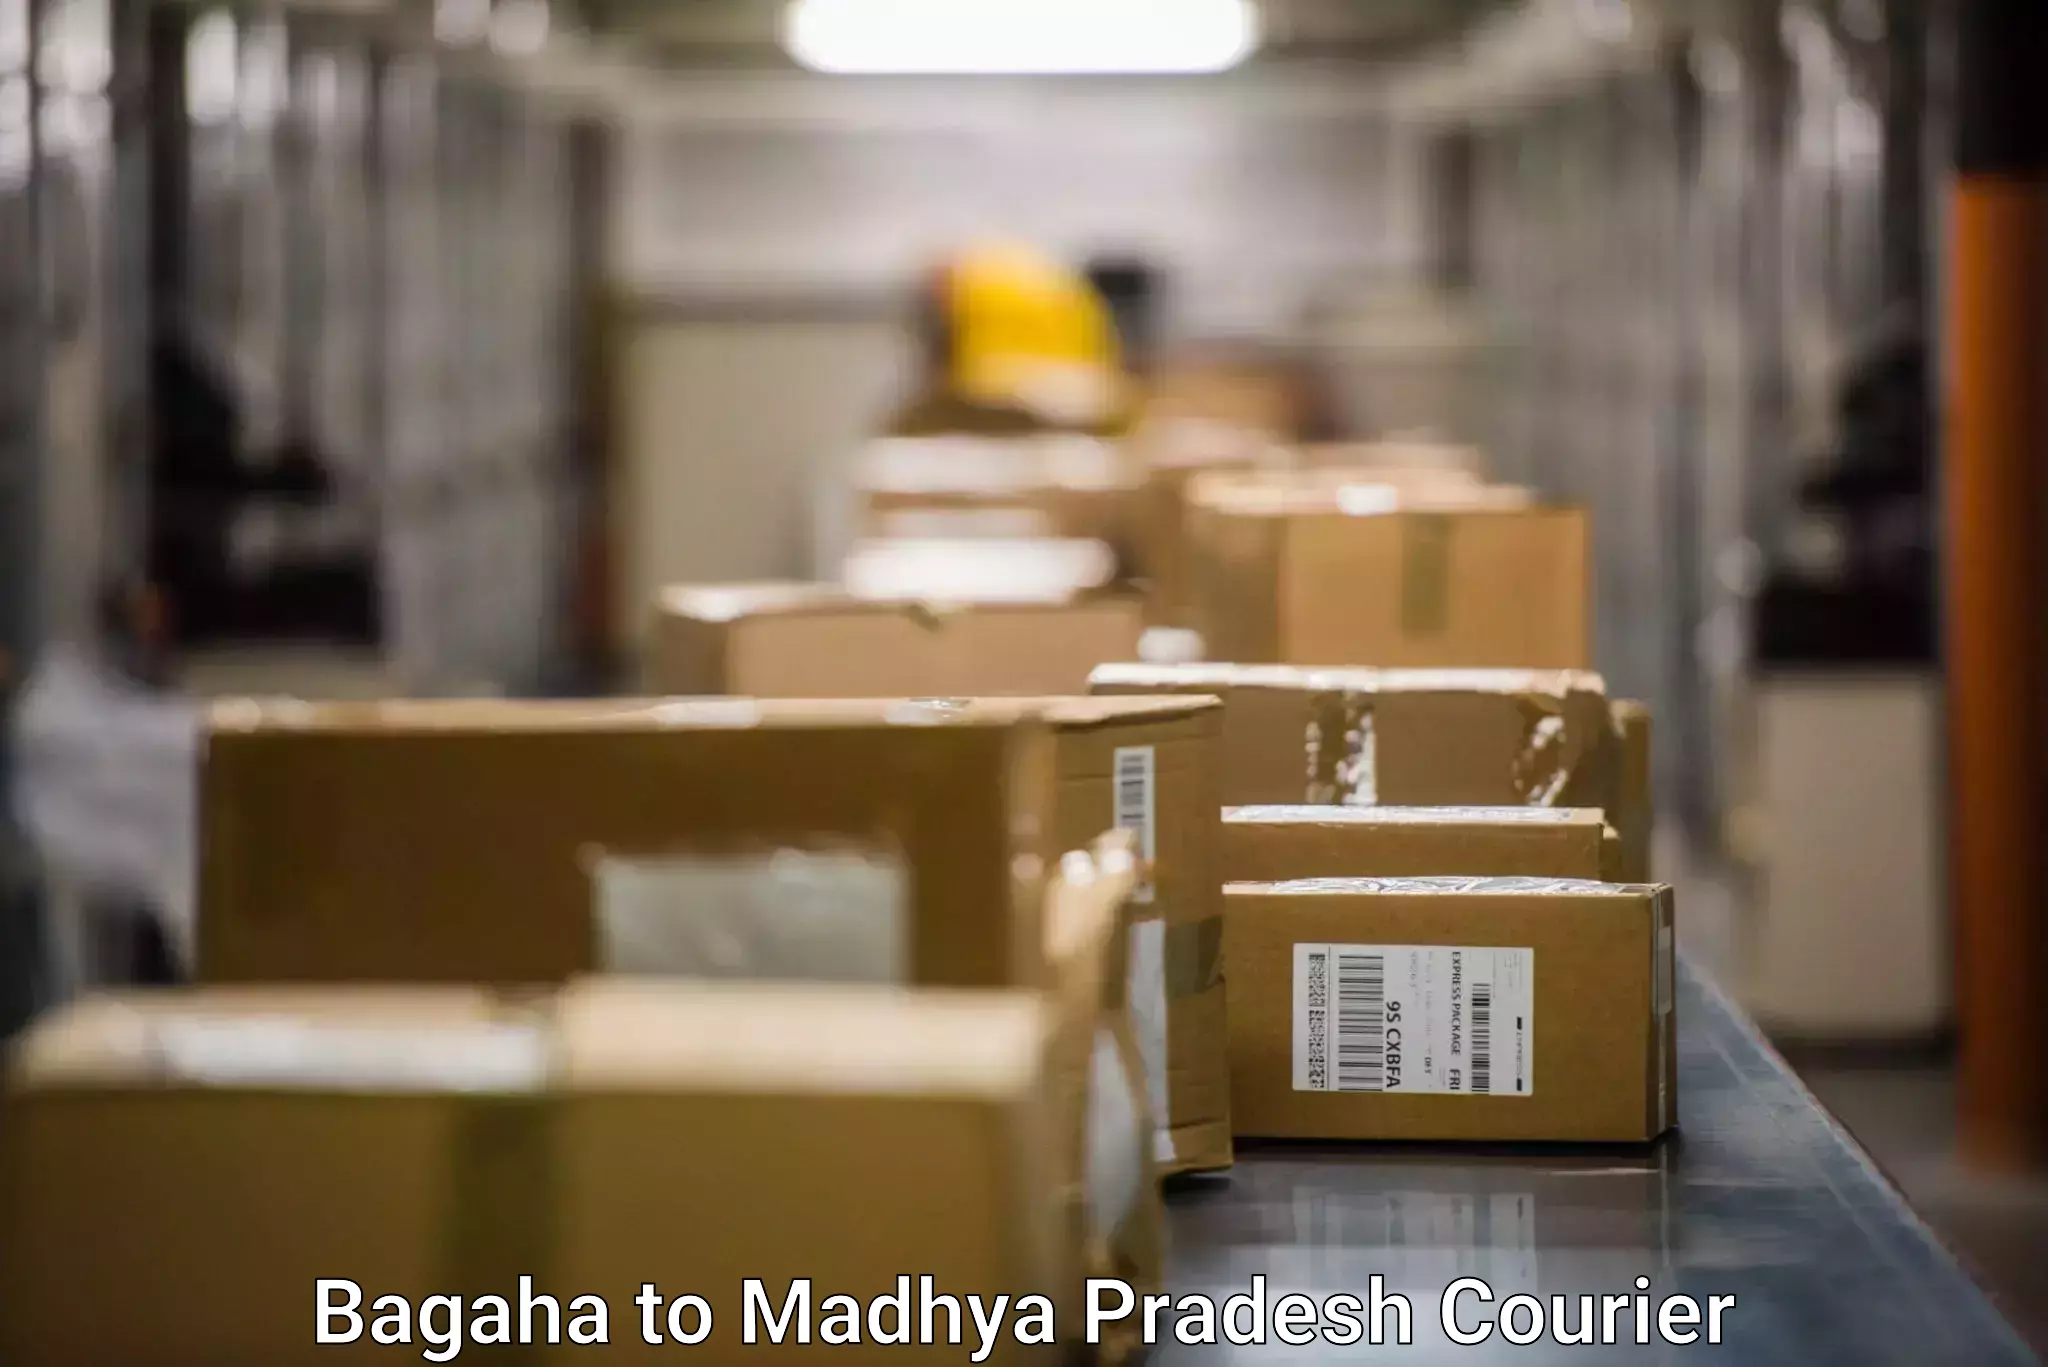 Large package courier Bagaha to Khirkiya